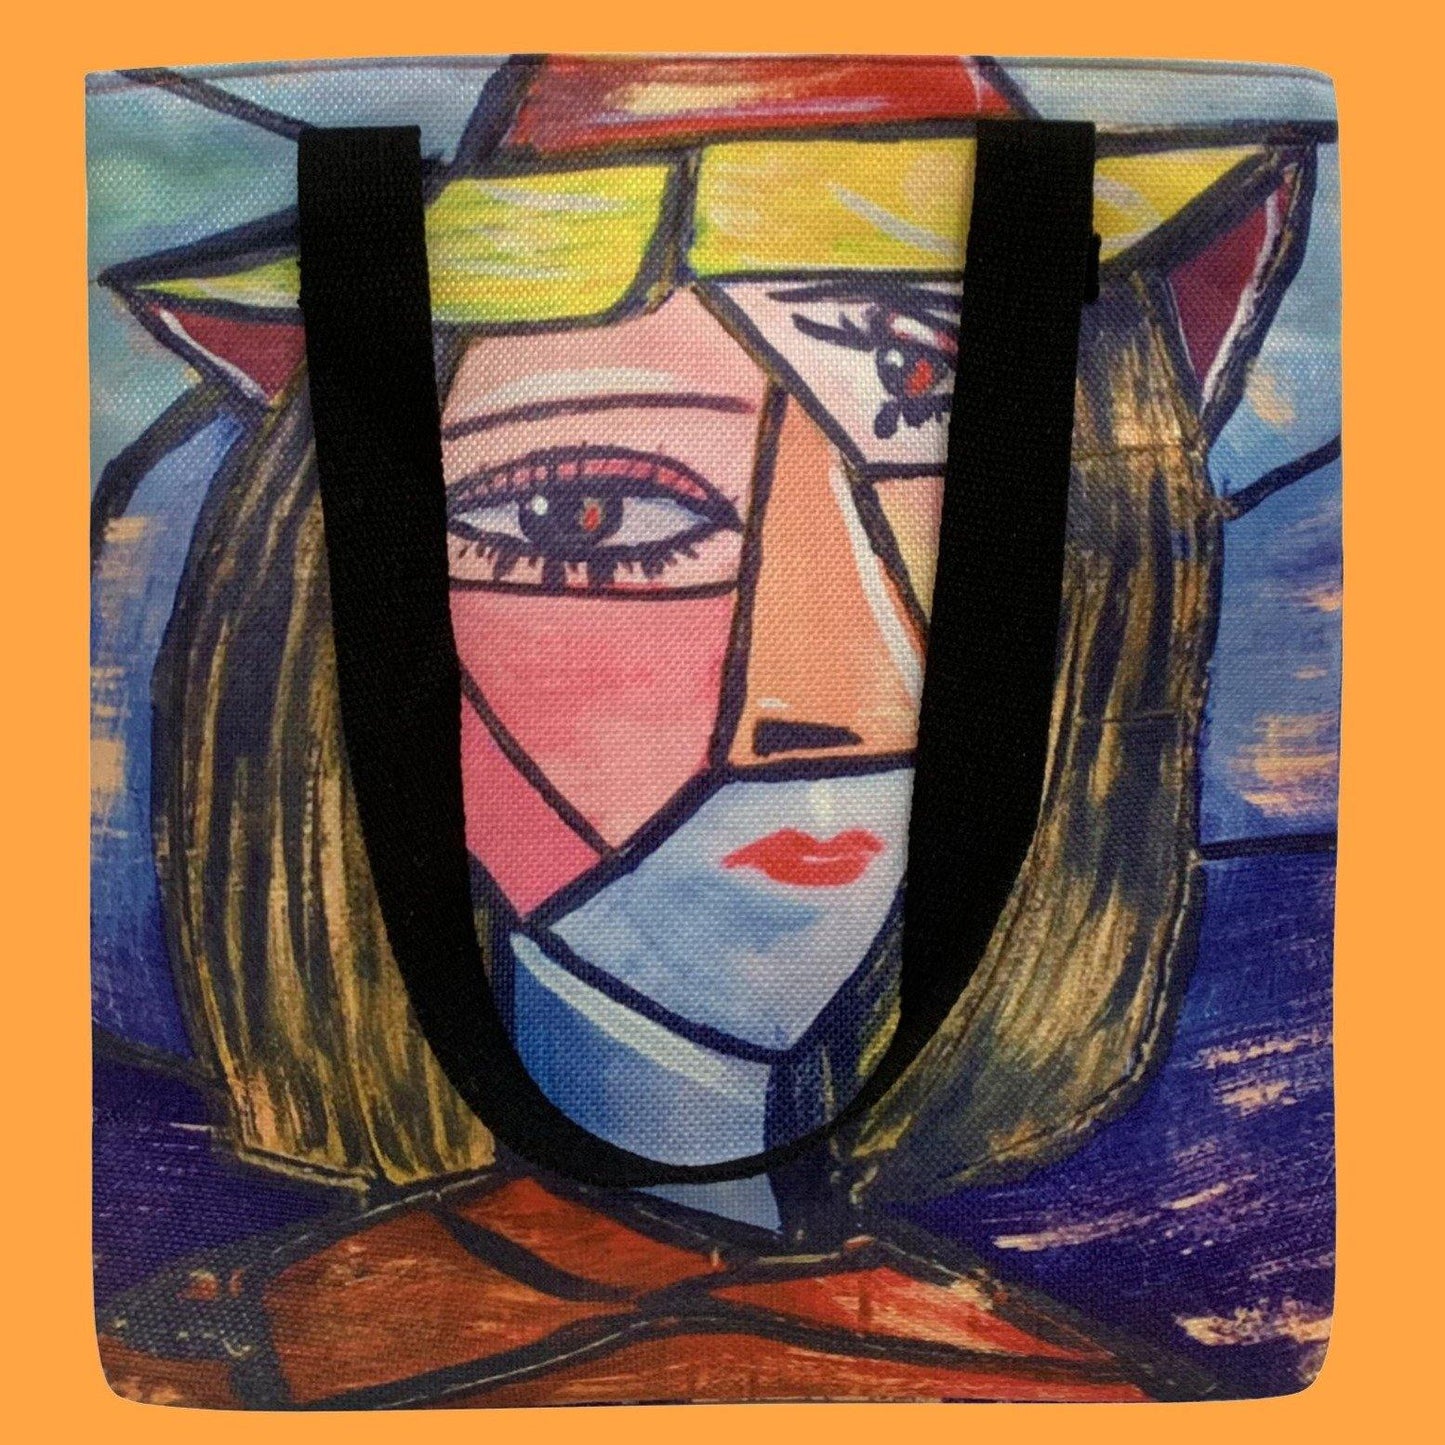 Nákupná taška, Picasso - Kubistický portrét, 38 cm x 10 cm x 36cm - KlenotTV.sk